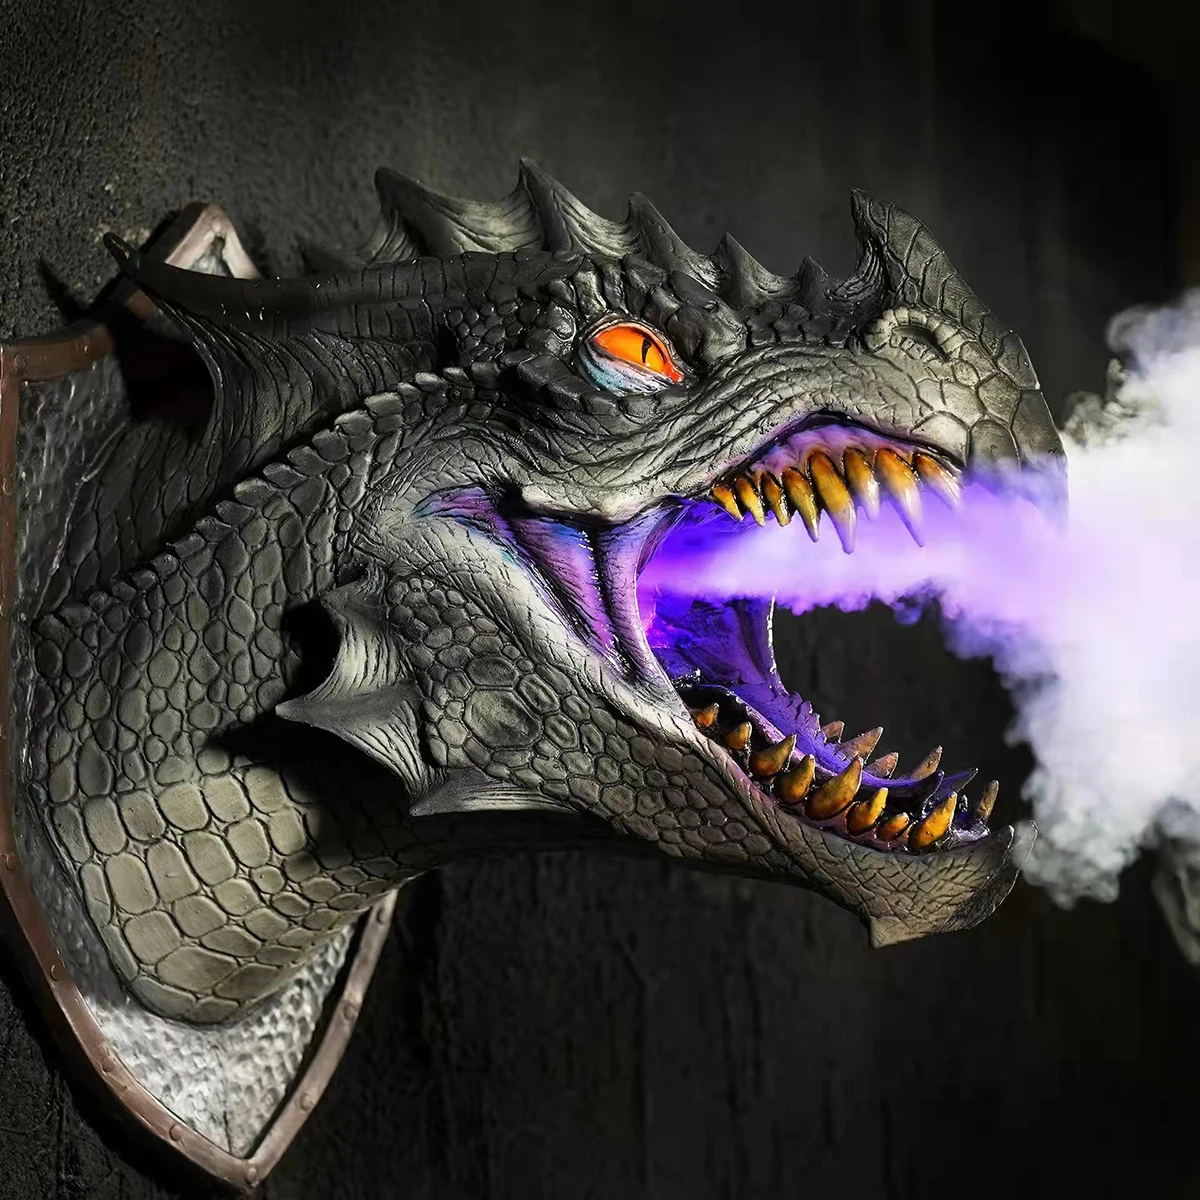 VIP Dragon Legends Prop Dinosaur Head 3d Wall Smoke Light Art Sculpture Shape Statue Home Decor Halloween Room Wall Decoration